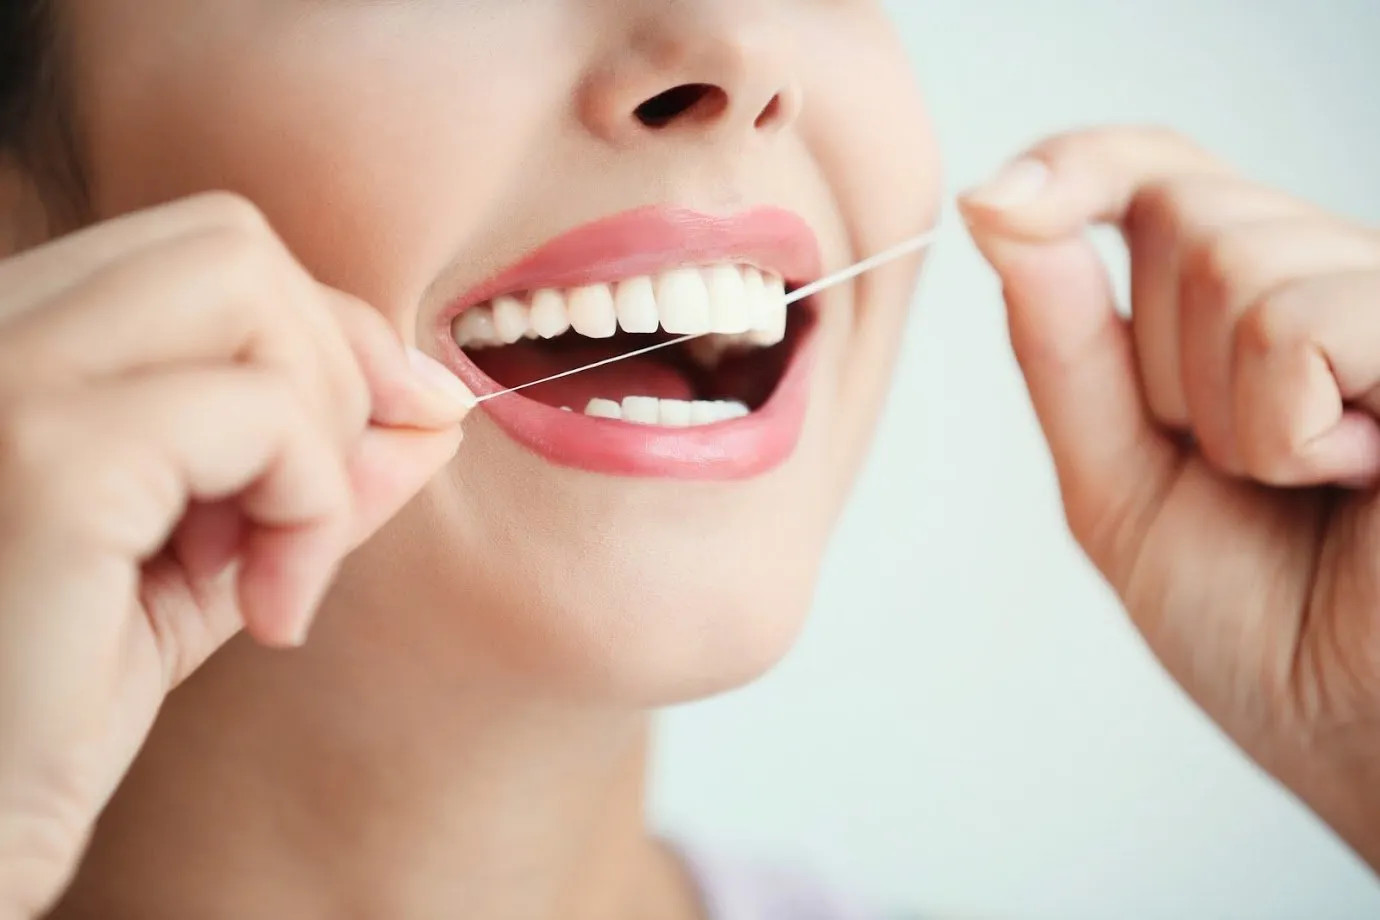 Chỉ Nha Khoa Oral-B Satin Tape Dental Floss 25m Mint - Made In Ireland, Làm Sạch Kẽ Răng, Loại Bỏ Thức Ăn Thừa